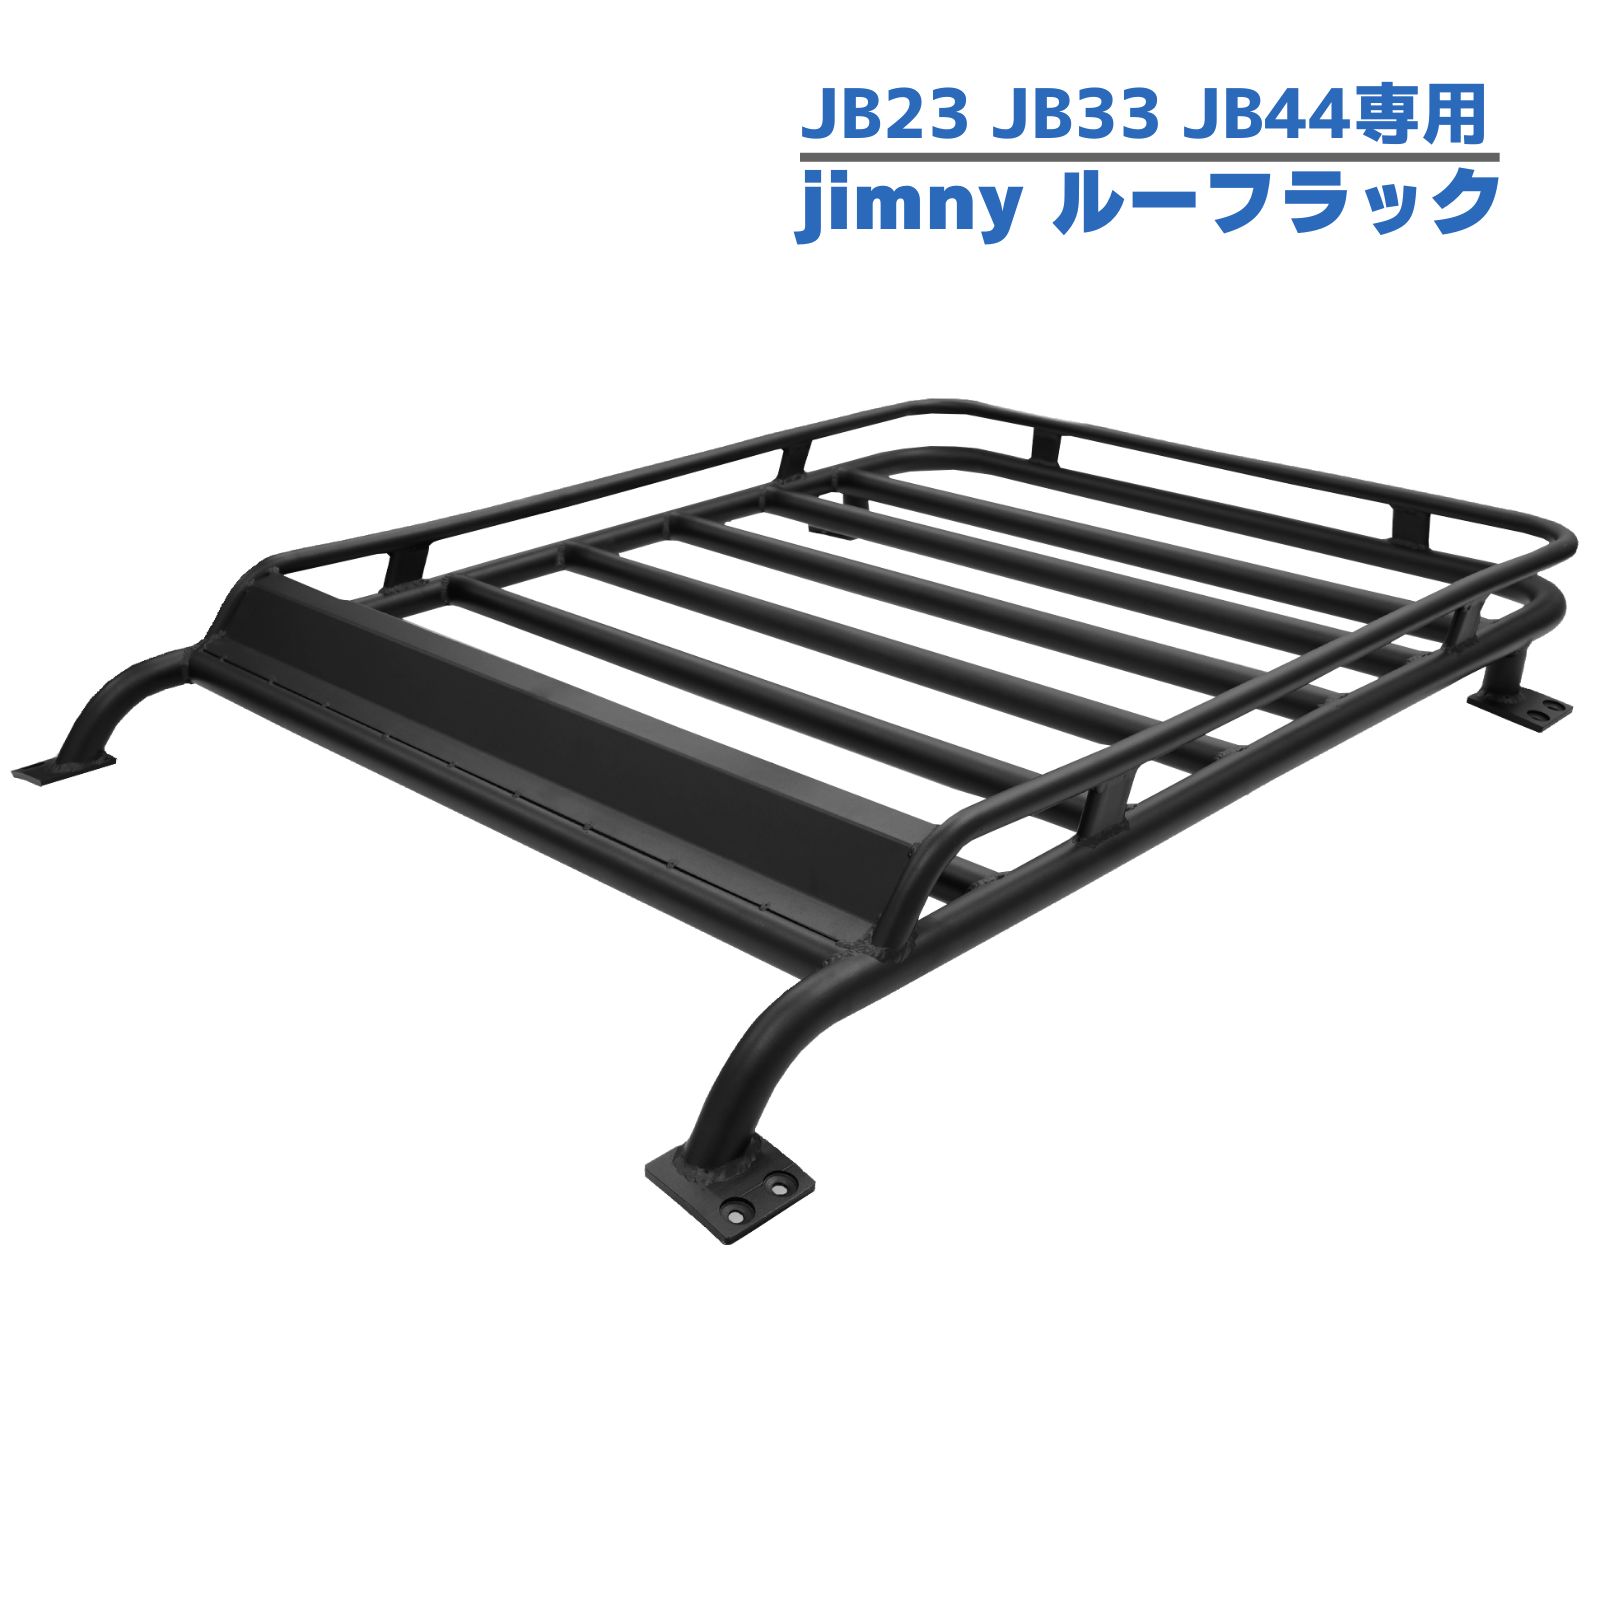  багажник на крыше Suzuki Jimny JB23 JB33 JB43 специальный алюминиевый багажник на крыше багажник на крыше черный простой инструкция имеется сборка не необходимо 